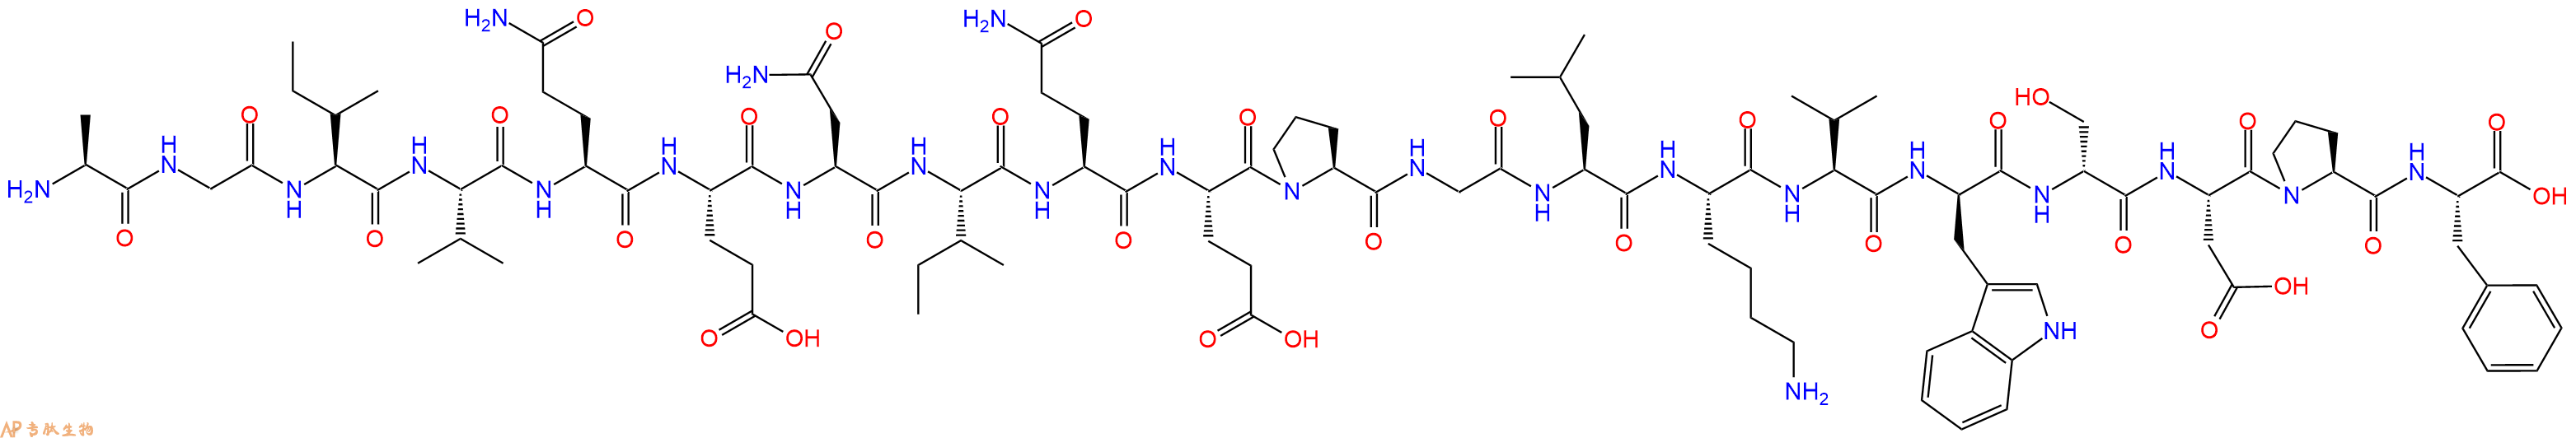 专肽生物产品H2N-Ala-Gly-Ile-Val-Gln-Glu-Asn-Ile-Gln-Glu-Pro-Gl